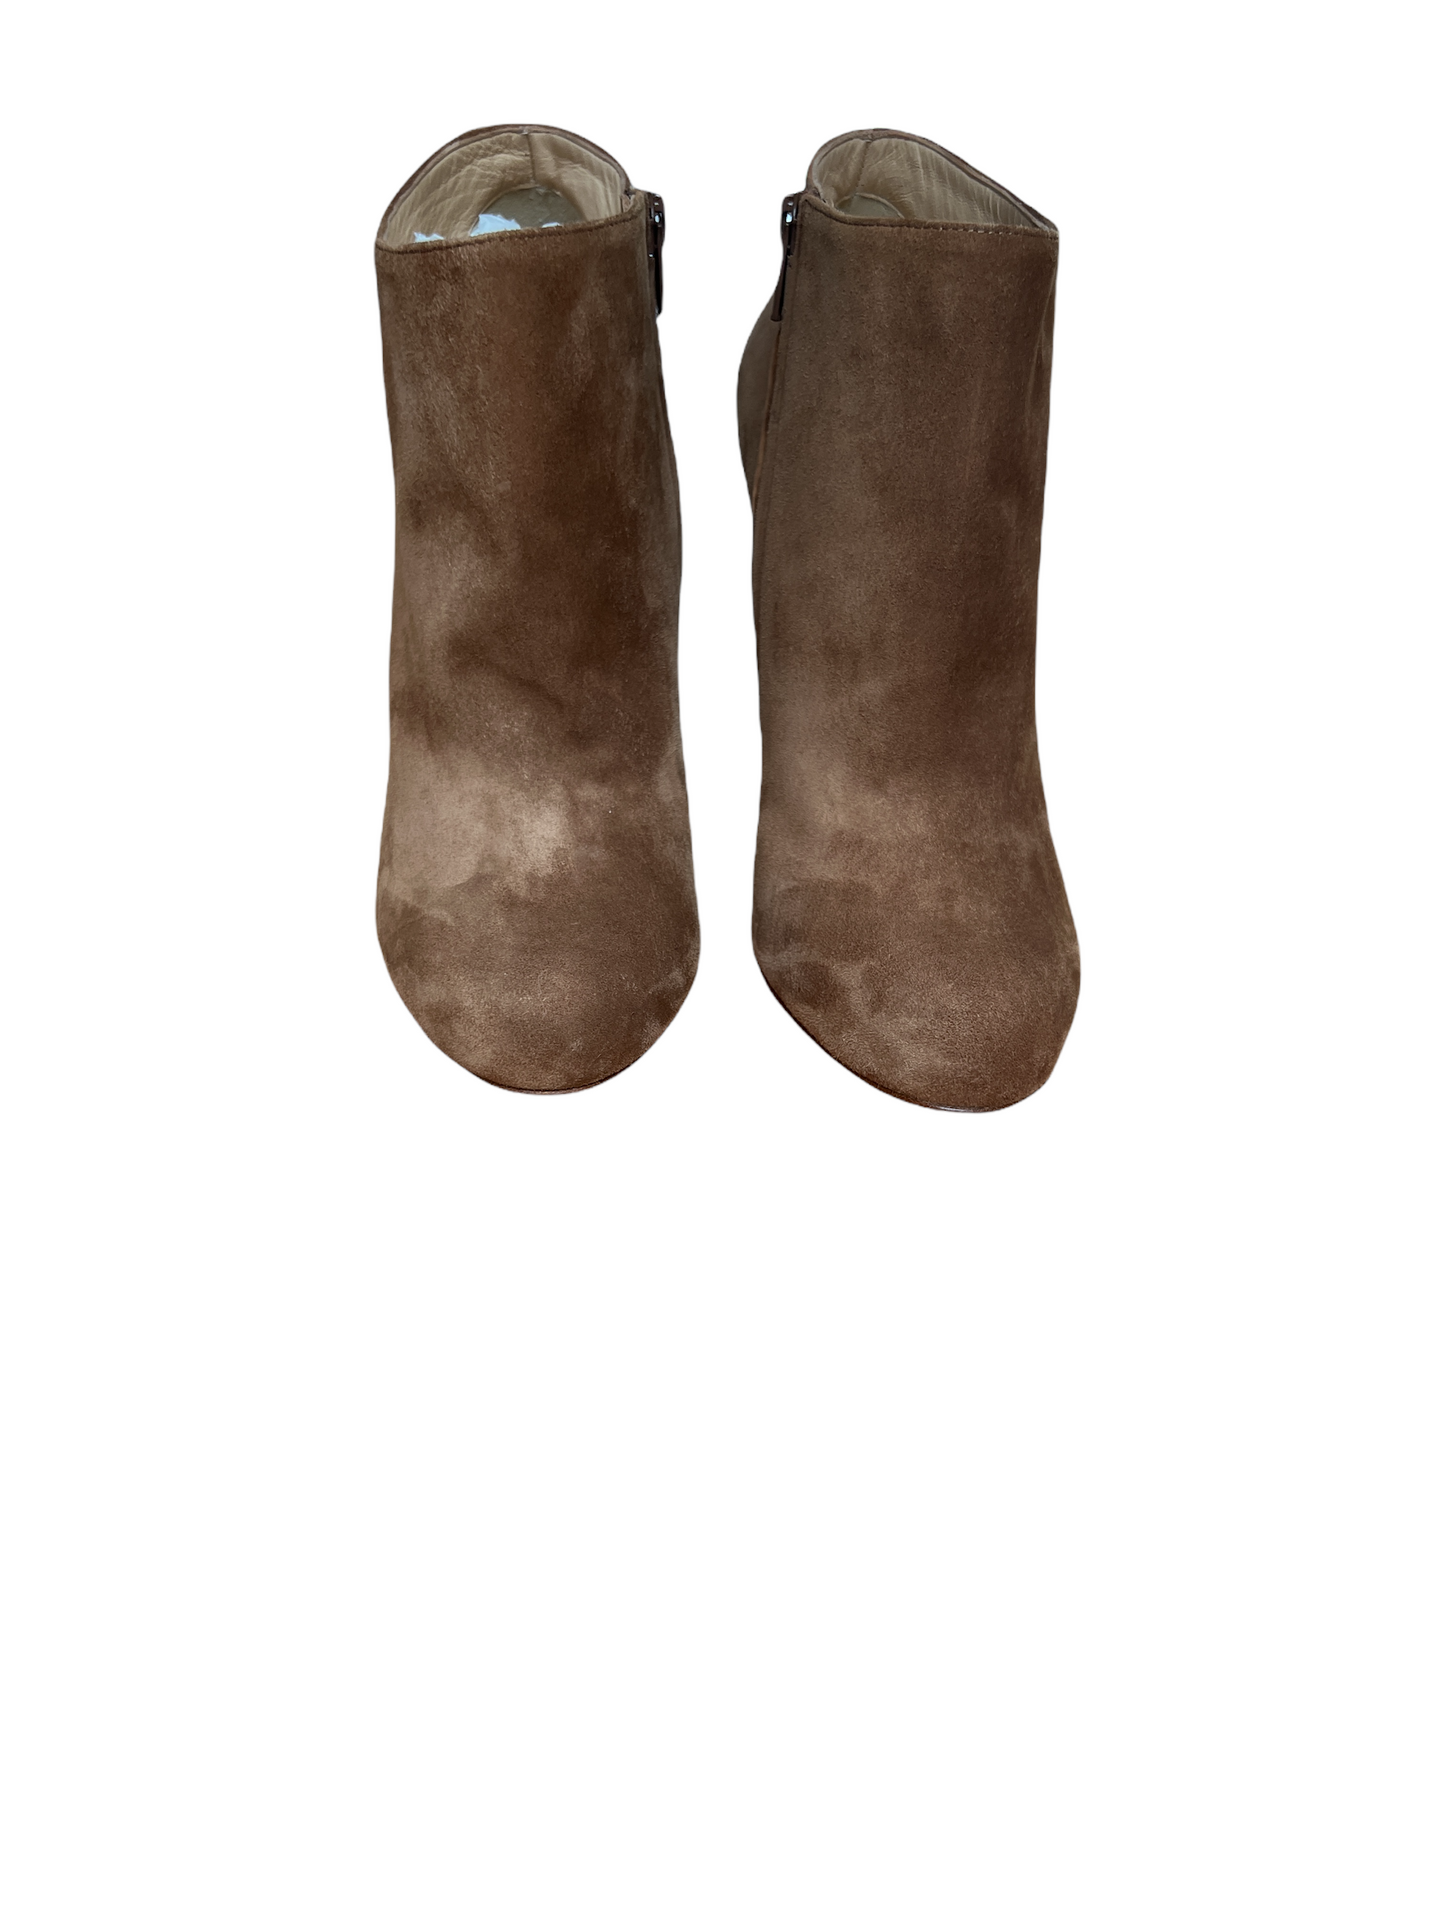 Brown Suede High Heels Boots - 10.5